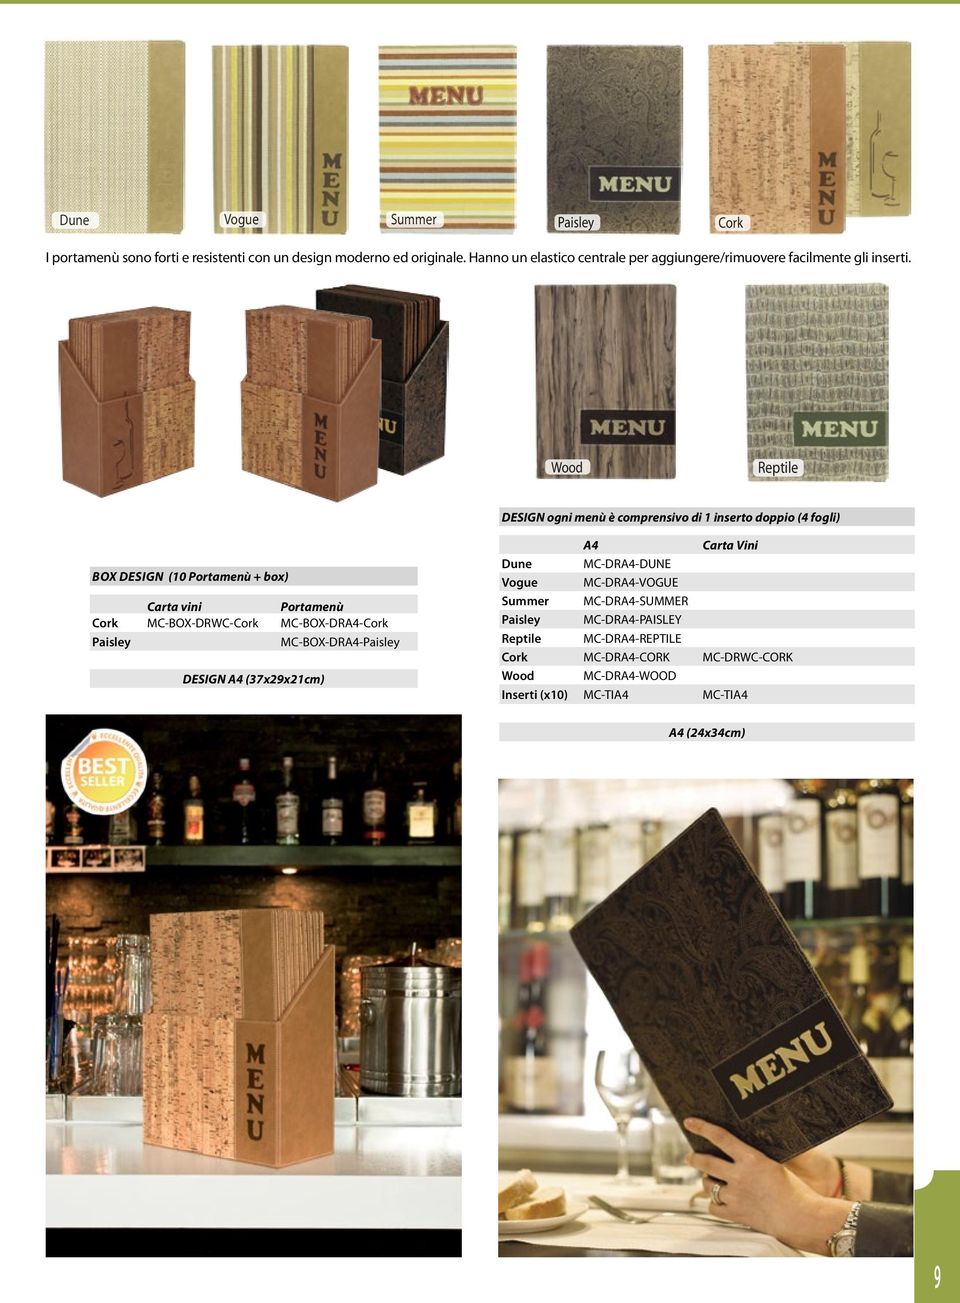 Wood Reptile DESIGN ogni menù è comprensivo di 1 inserto doppio (4 fogli) BOX DESIGN (10 Portamenù + box) Carta vini Portamenù Cork MC-BOX-DRWC-Cork